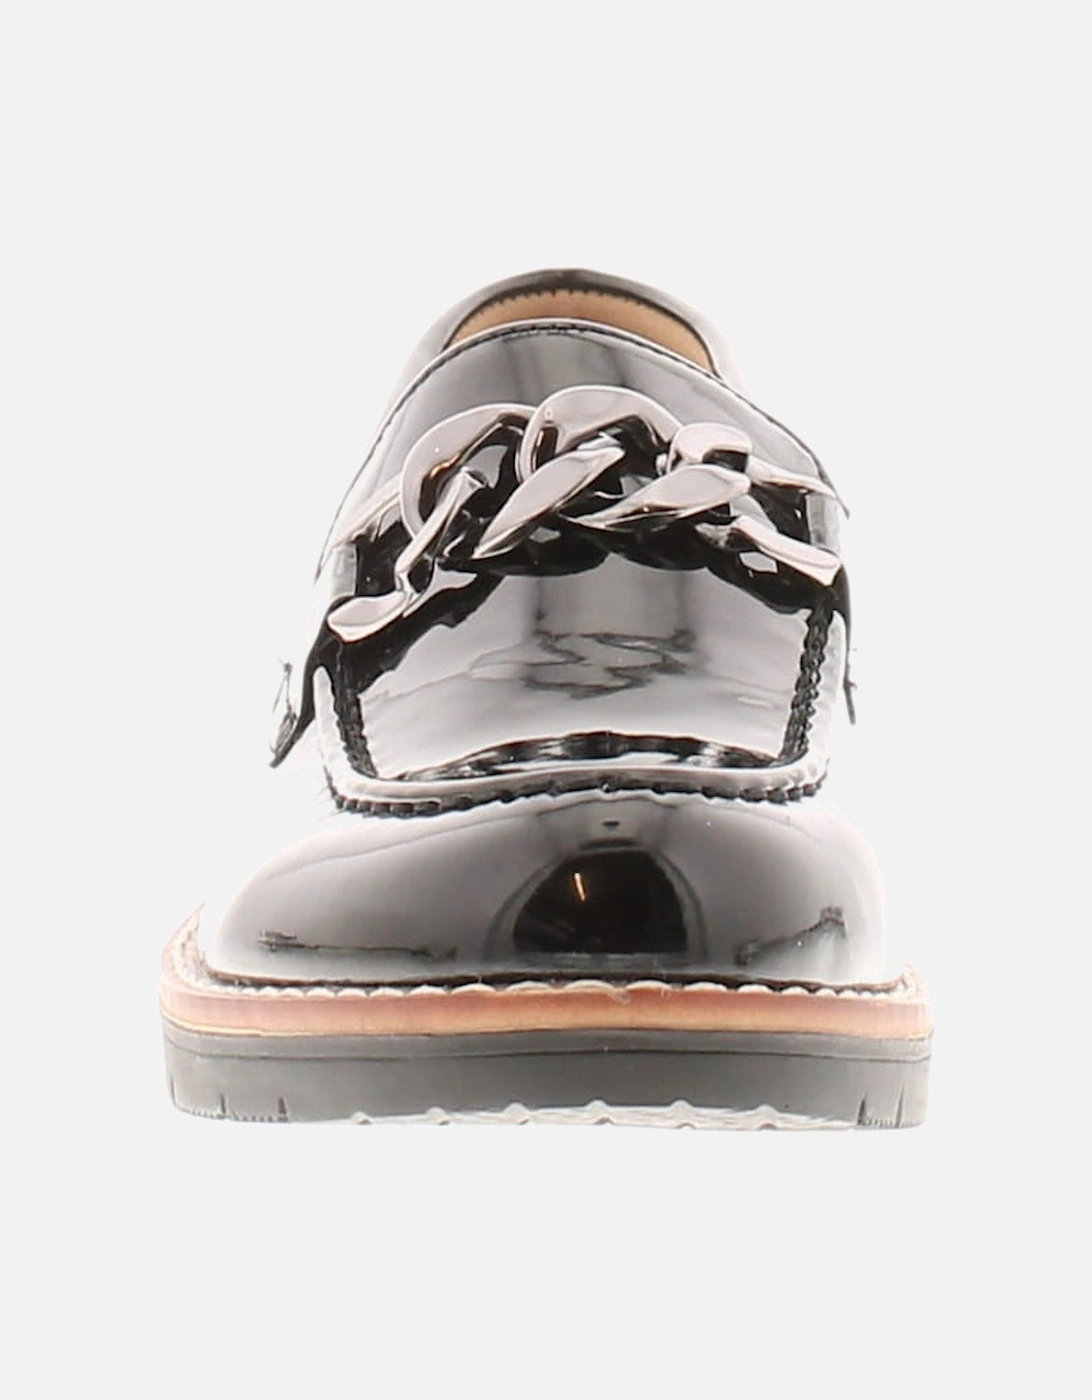 Womens Flat Shoes Loafers Ledge Slip On black UK Size